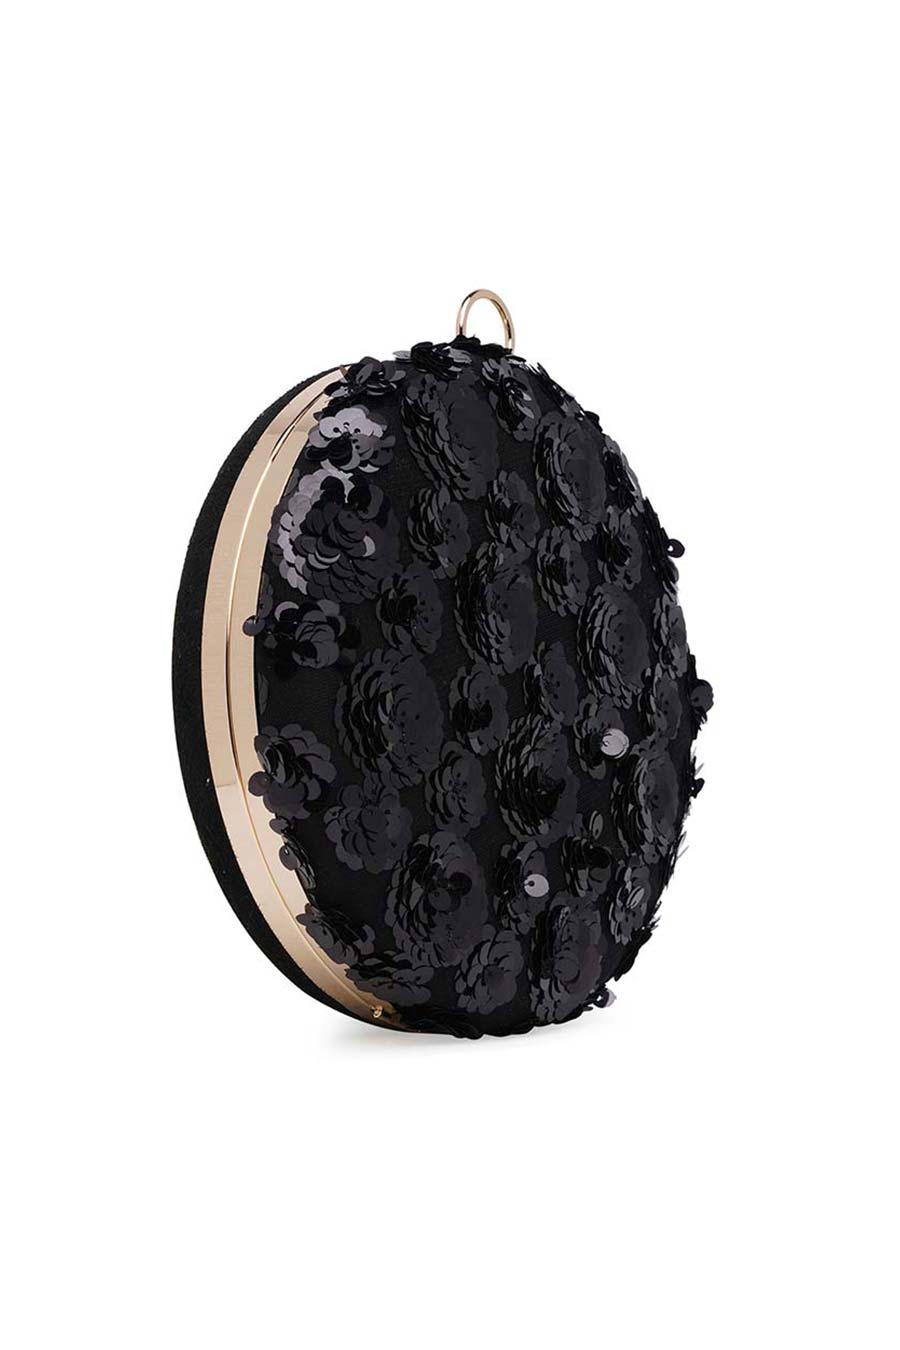 Black Floral Sequin Round Clutch